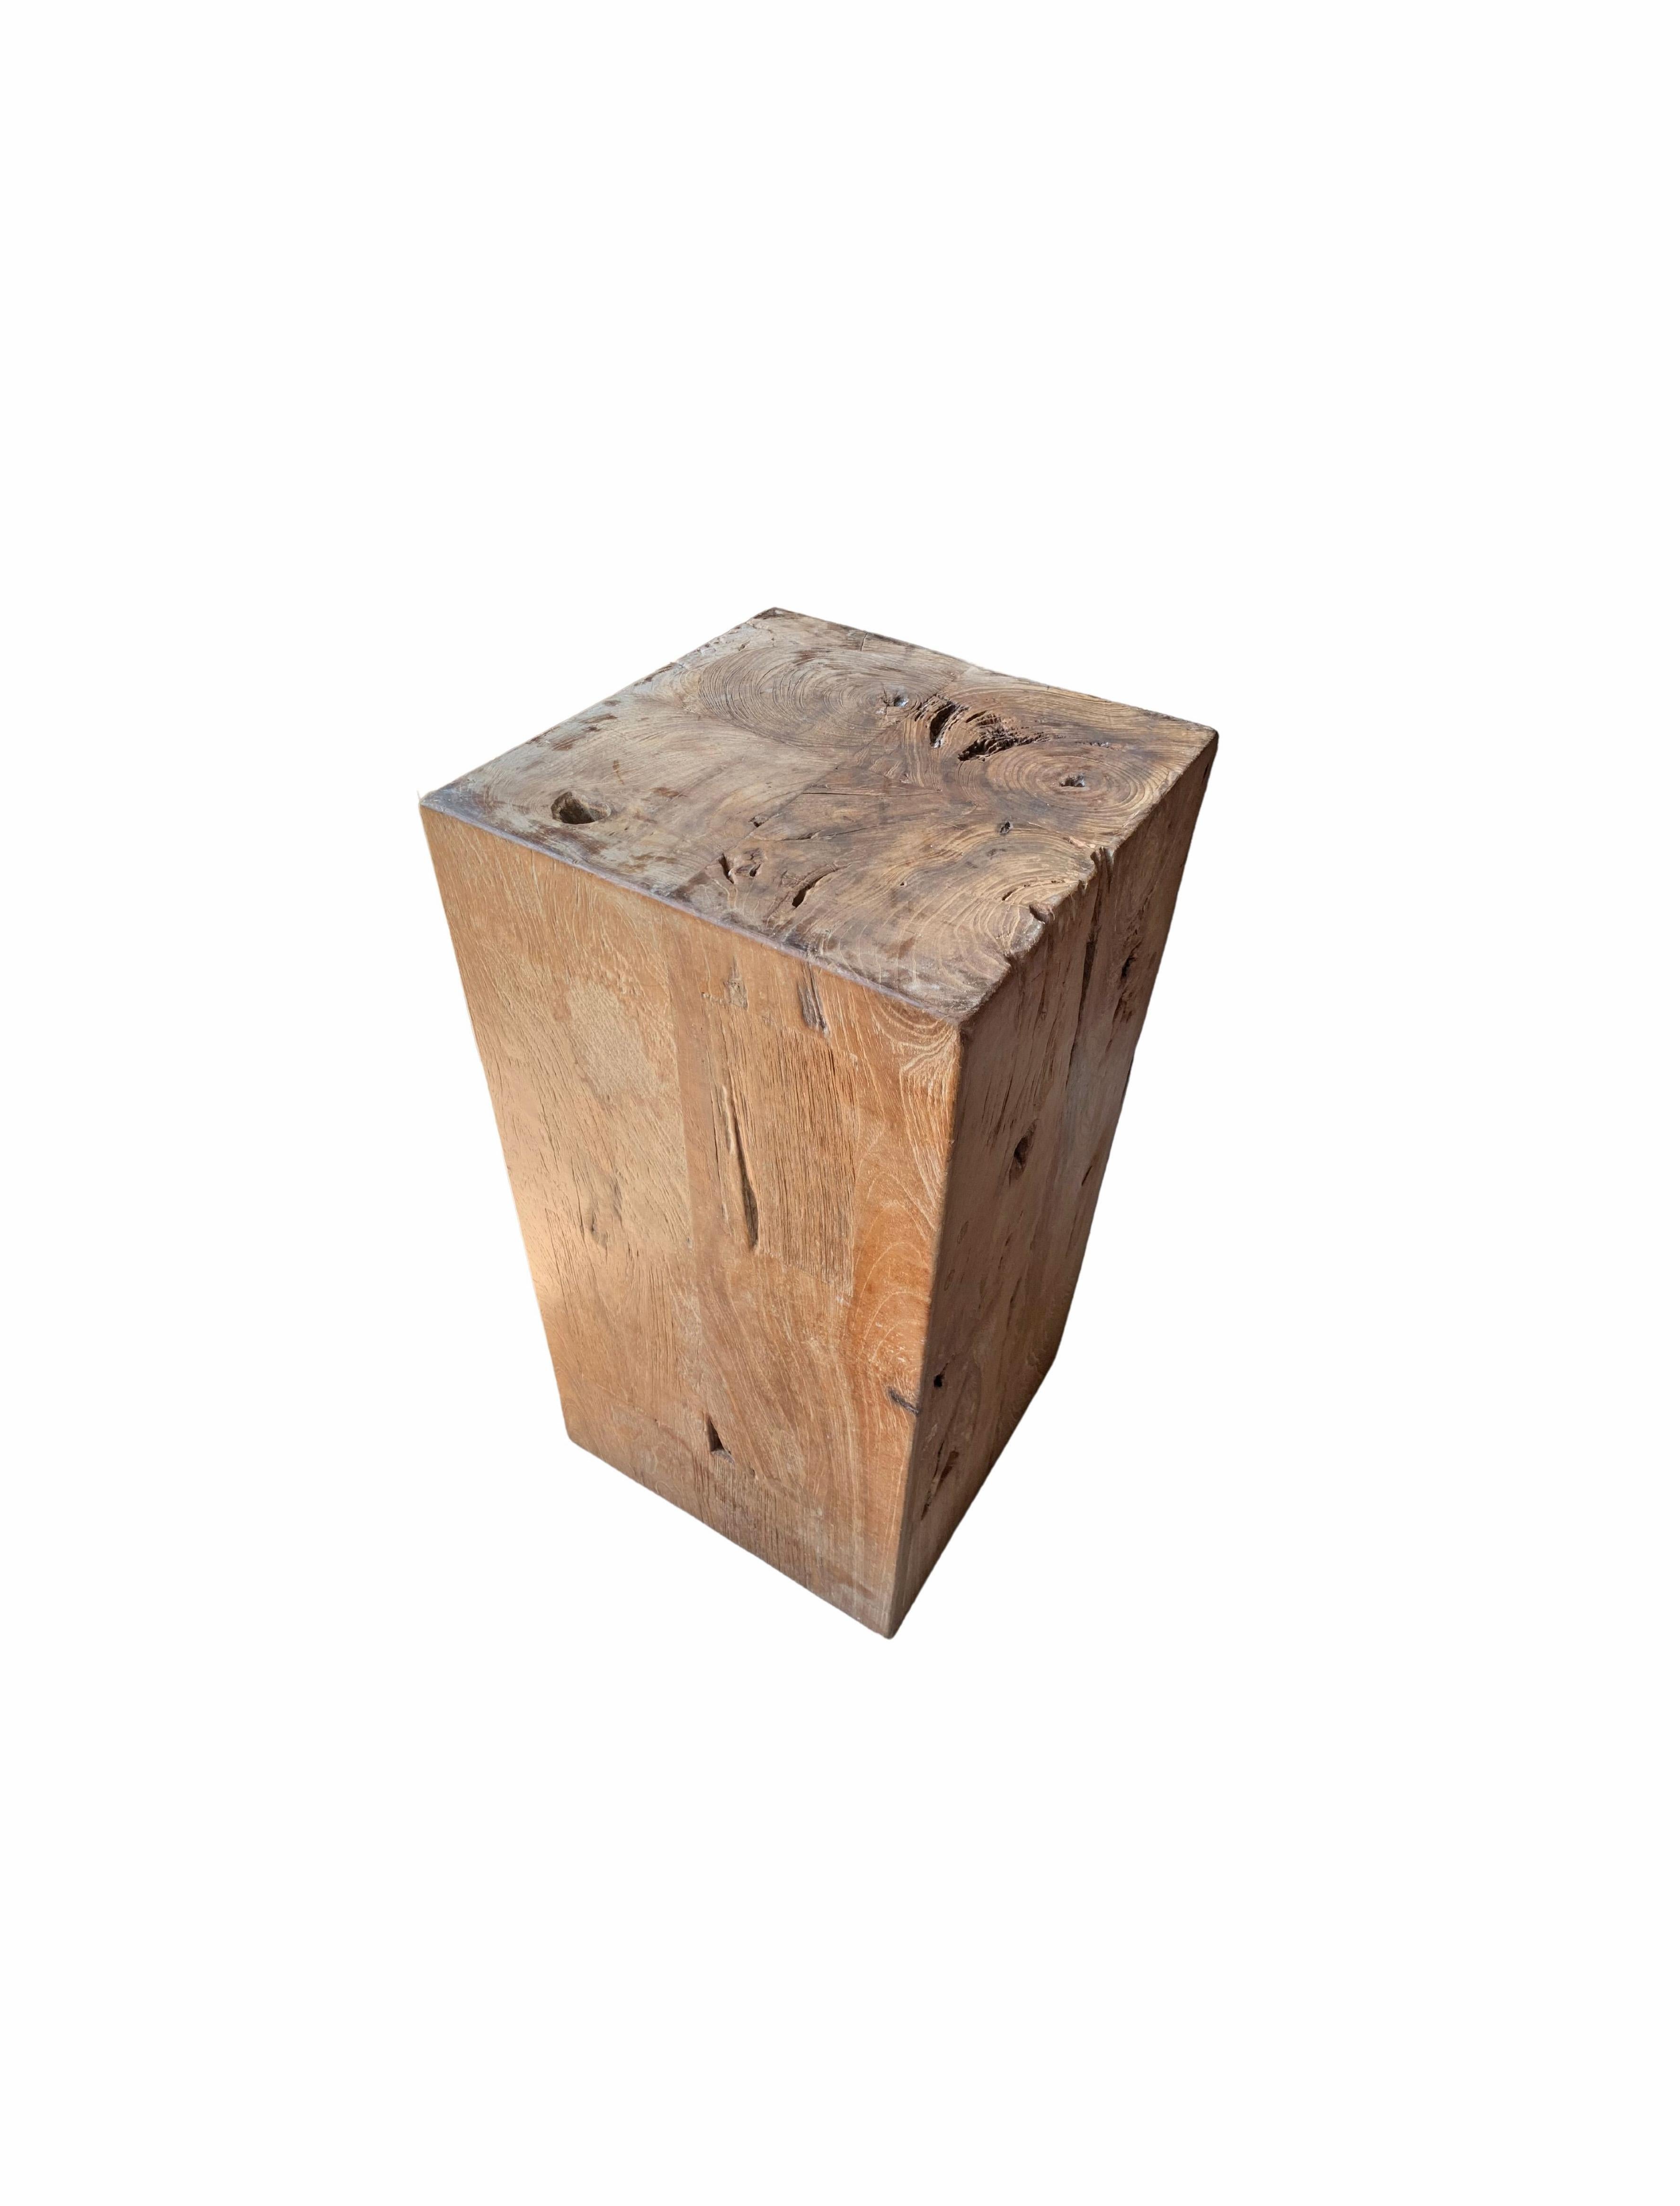 Ce piédestal en bois de teck a été fabriqué en moulant ensemble 4 blocs de bois de teck massif. Un piédestal solide et robuste qui est à la fois beau seul ou qui peut présenter des sculptures, des vases ou d'autres objets. Un objet merveilleusement